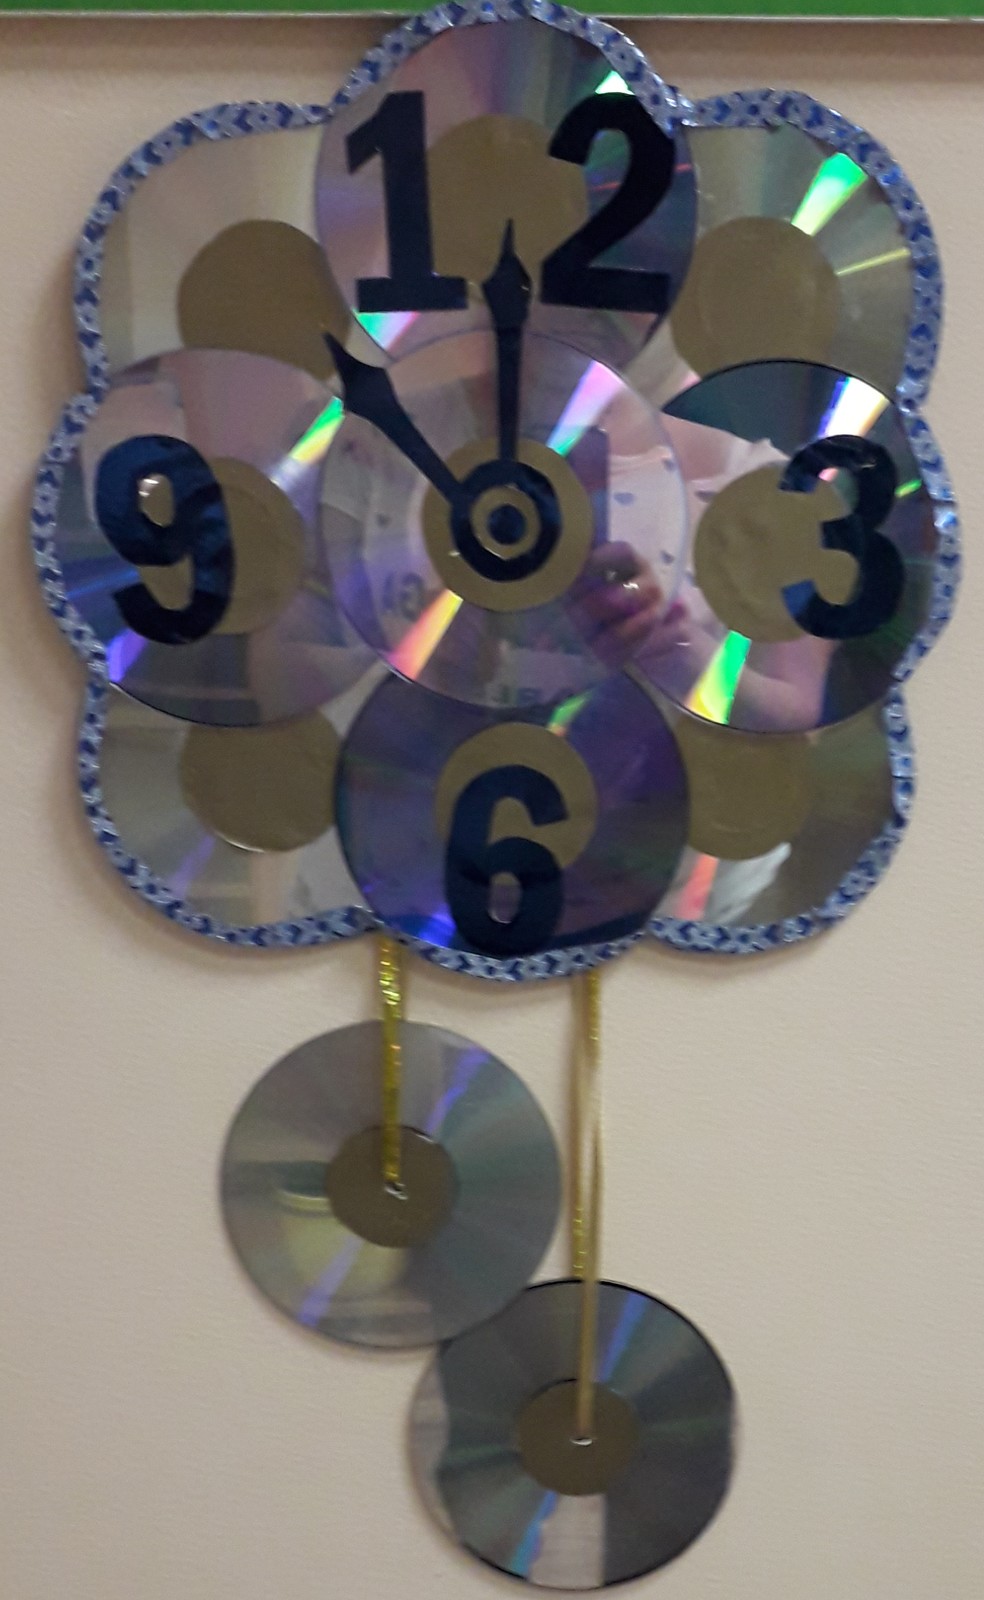 Часы из СД дисков